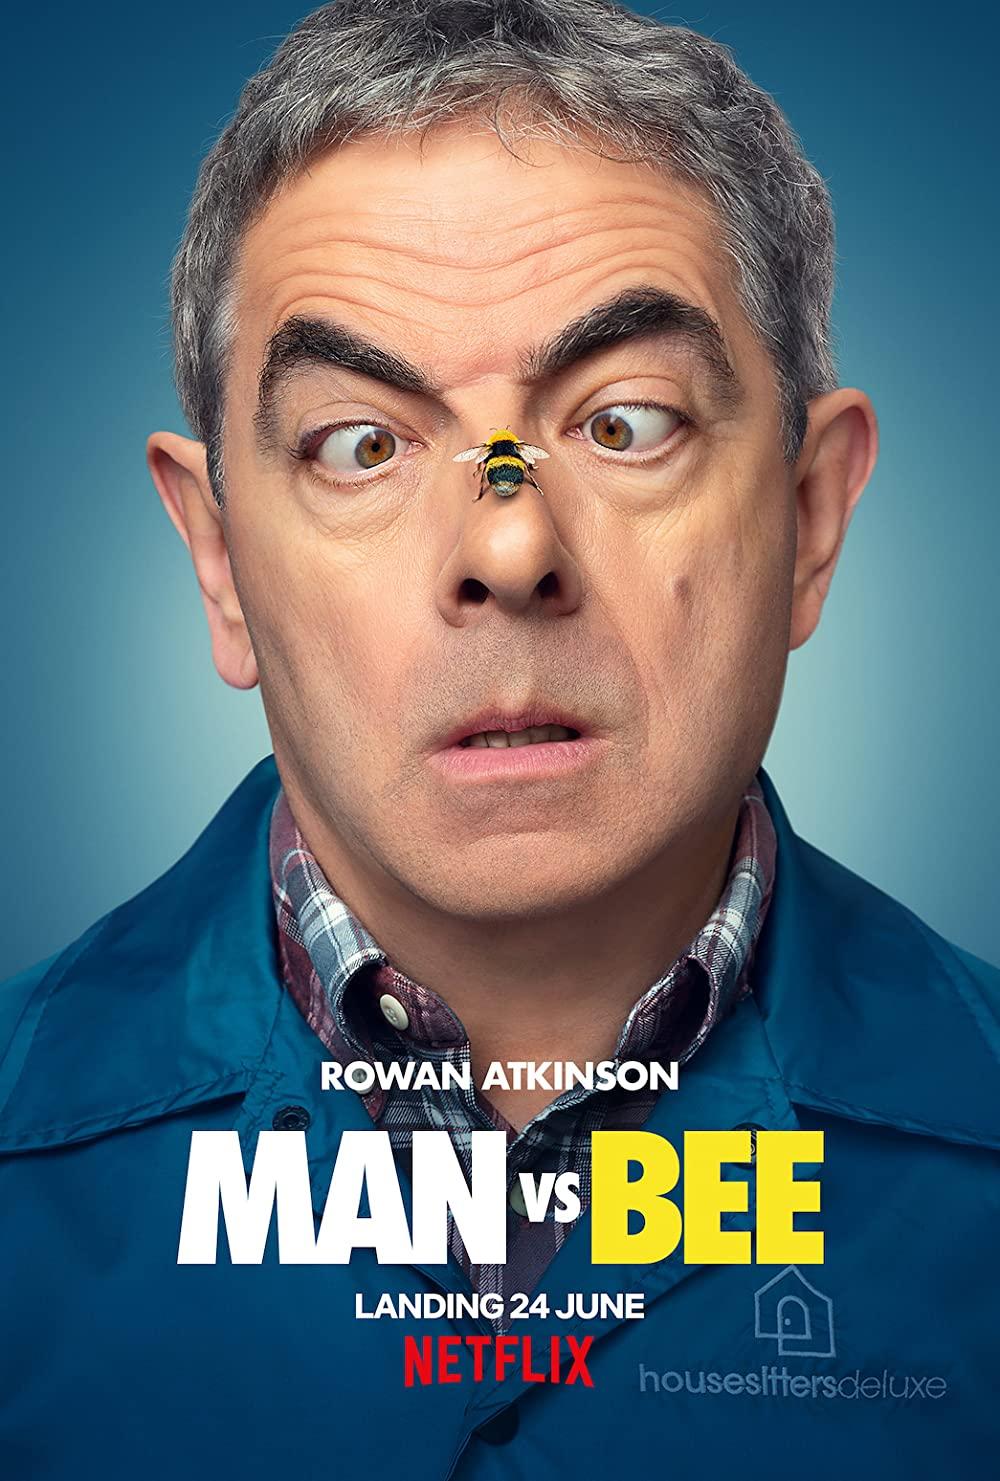 مرد در مقابل زنبور